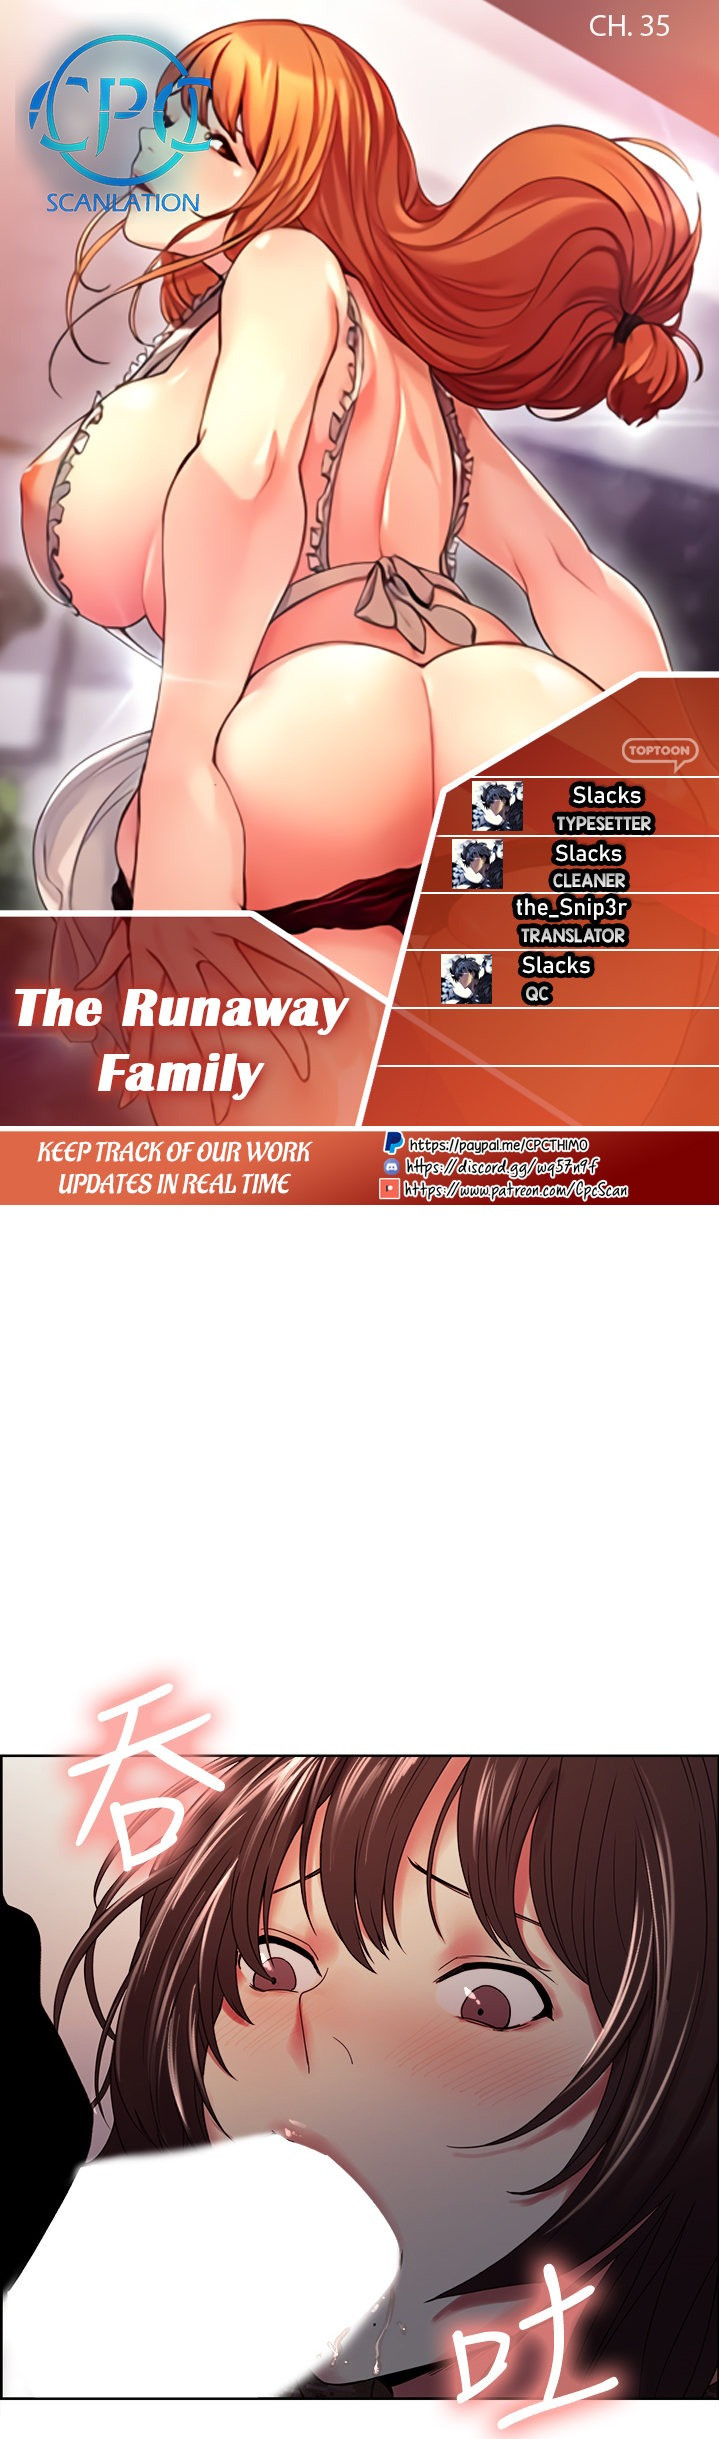 Watch image manhwa The Runaway Family - Chapter 35 - tCXDjhGcj0lnEuz - ManhwaXX.net